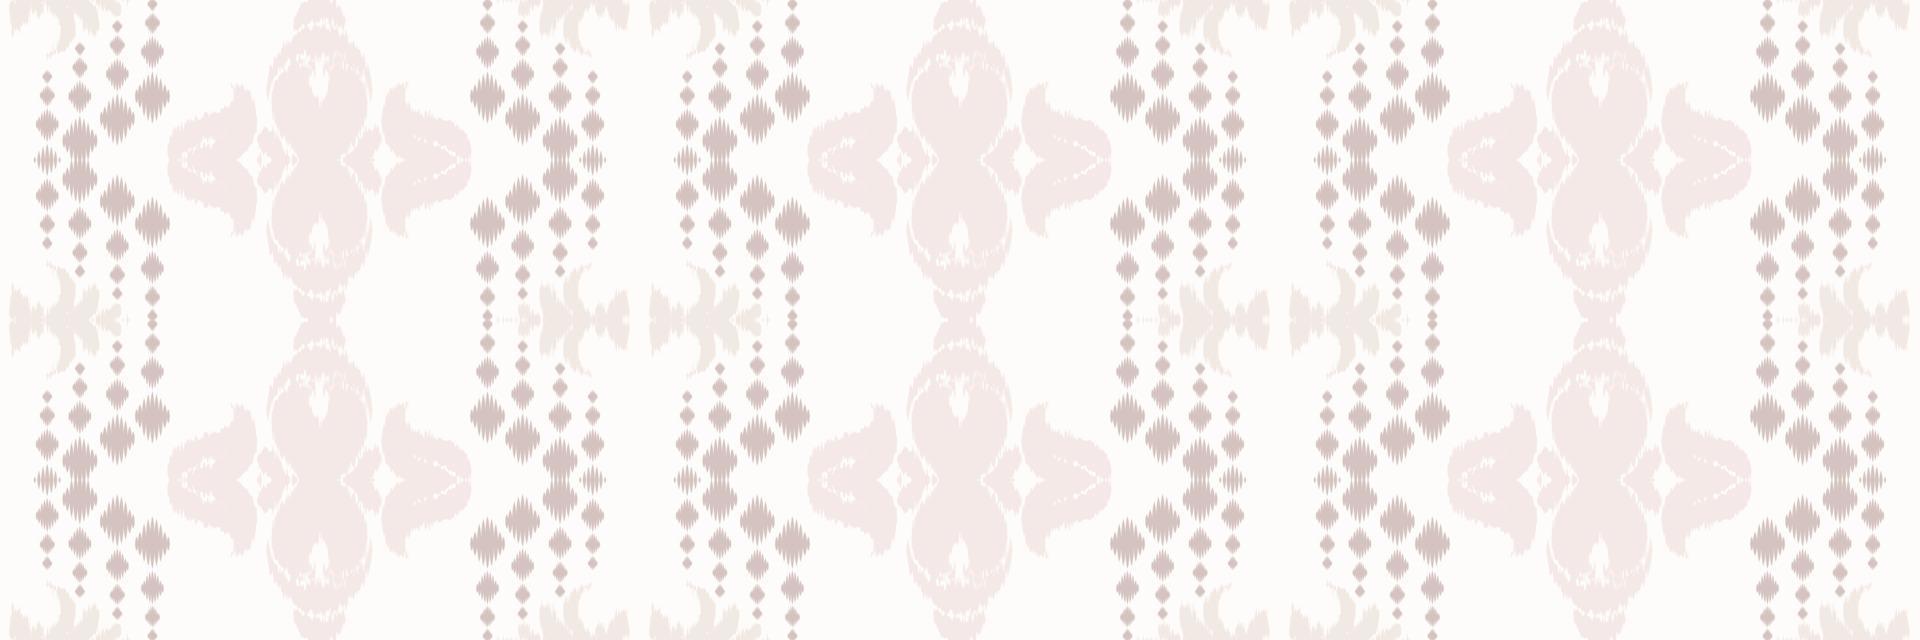 batik têxtil ikkat ou ikat listra sem costura padrão design de vetor digital para impressão saree kurti borneo tecido borda escova símbolos designer de amostras